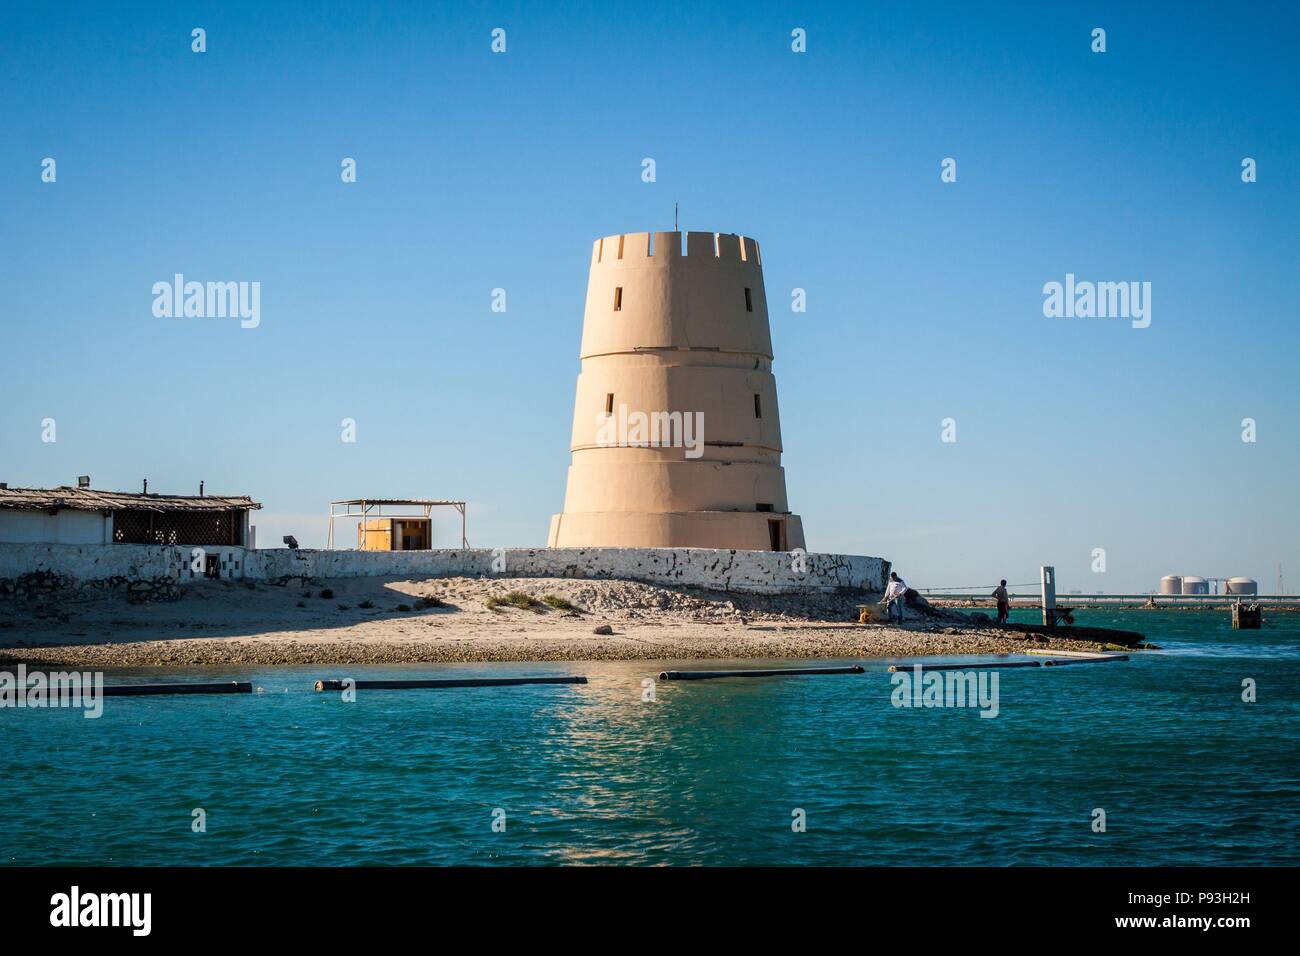 Königreich von Bahrain, Persischer Golf, NAHER OSTEN Stockfoto